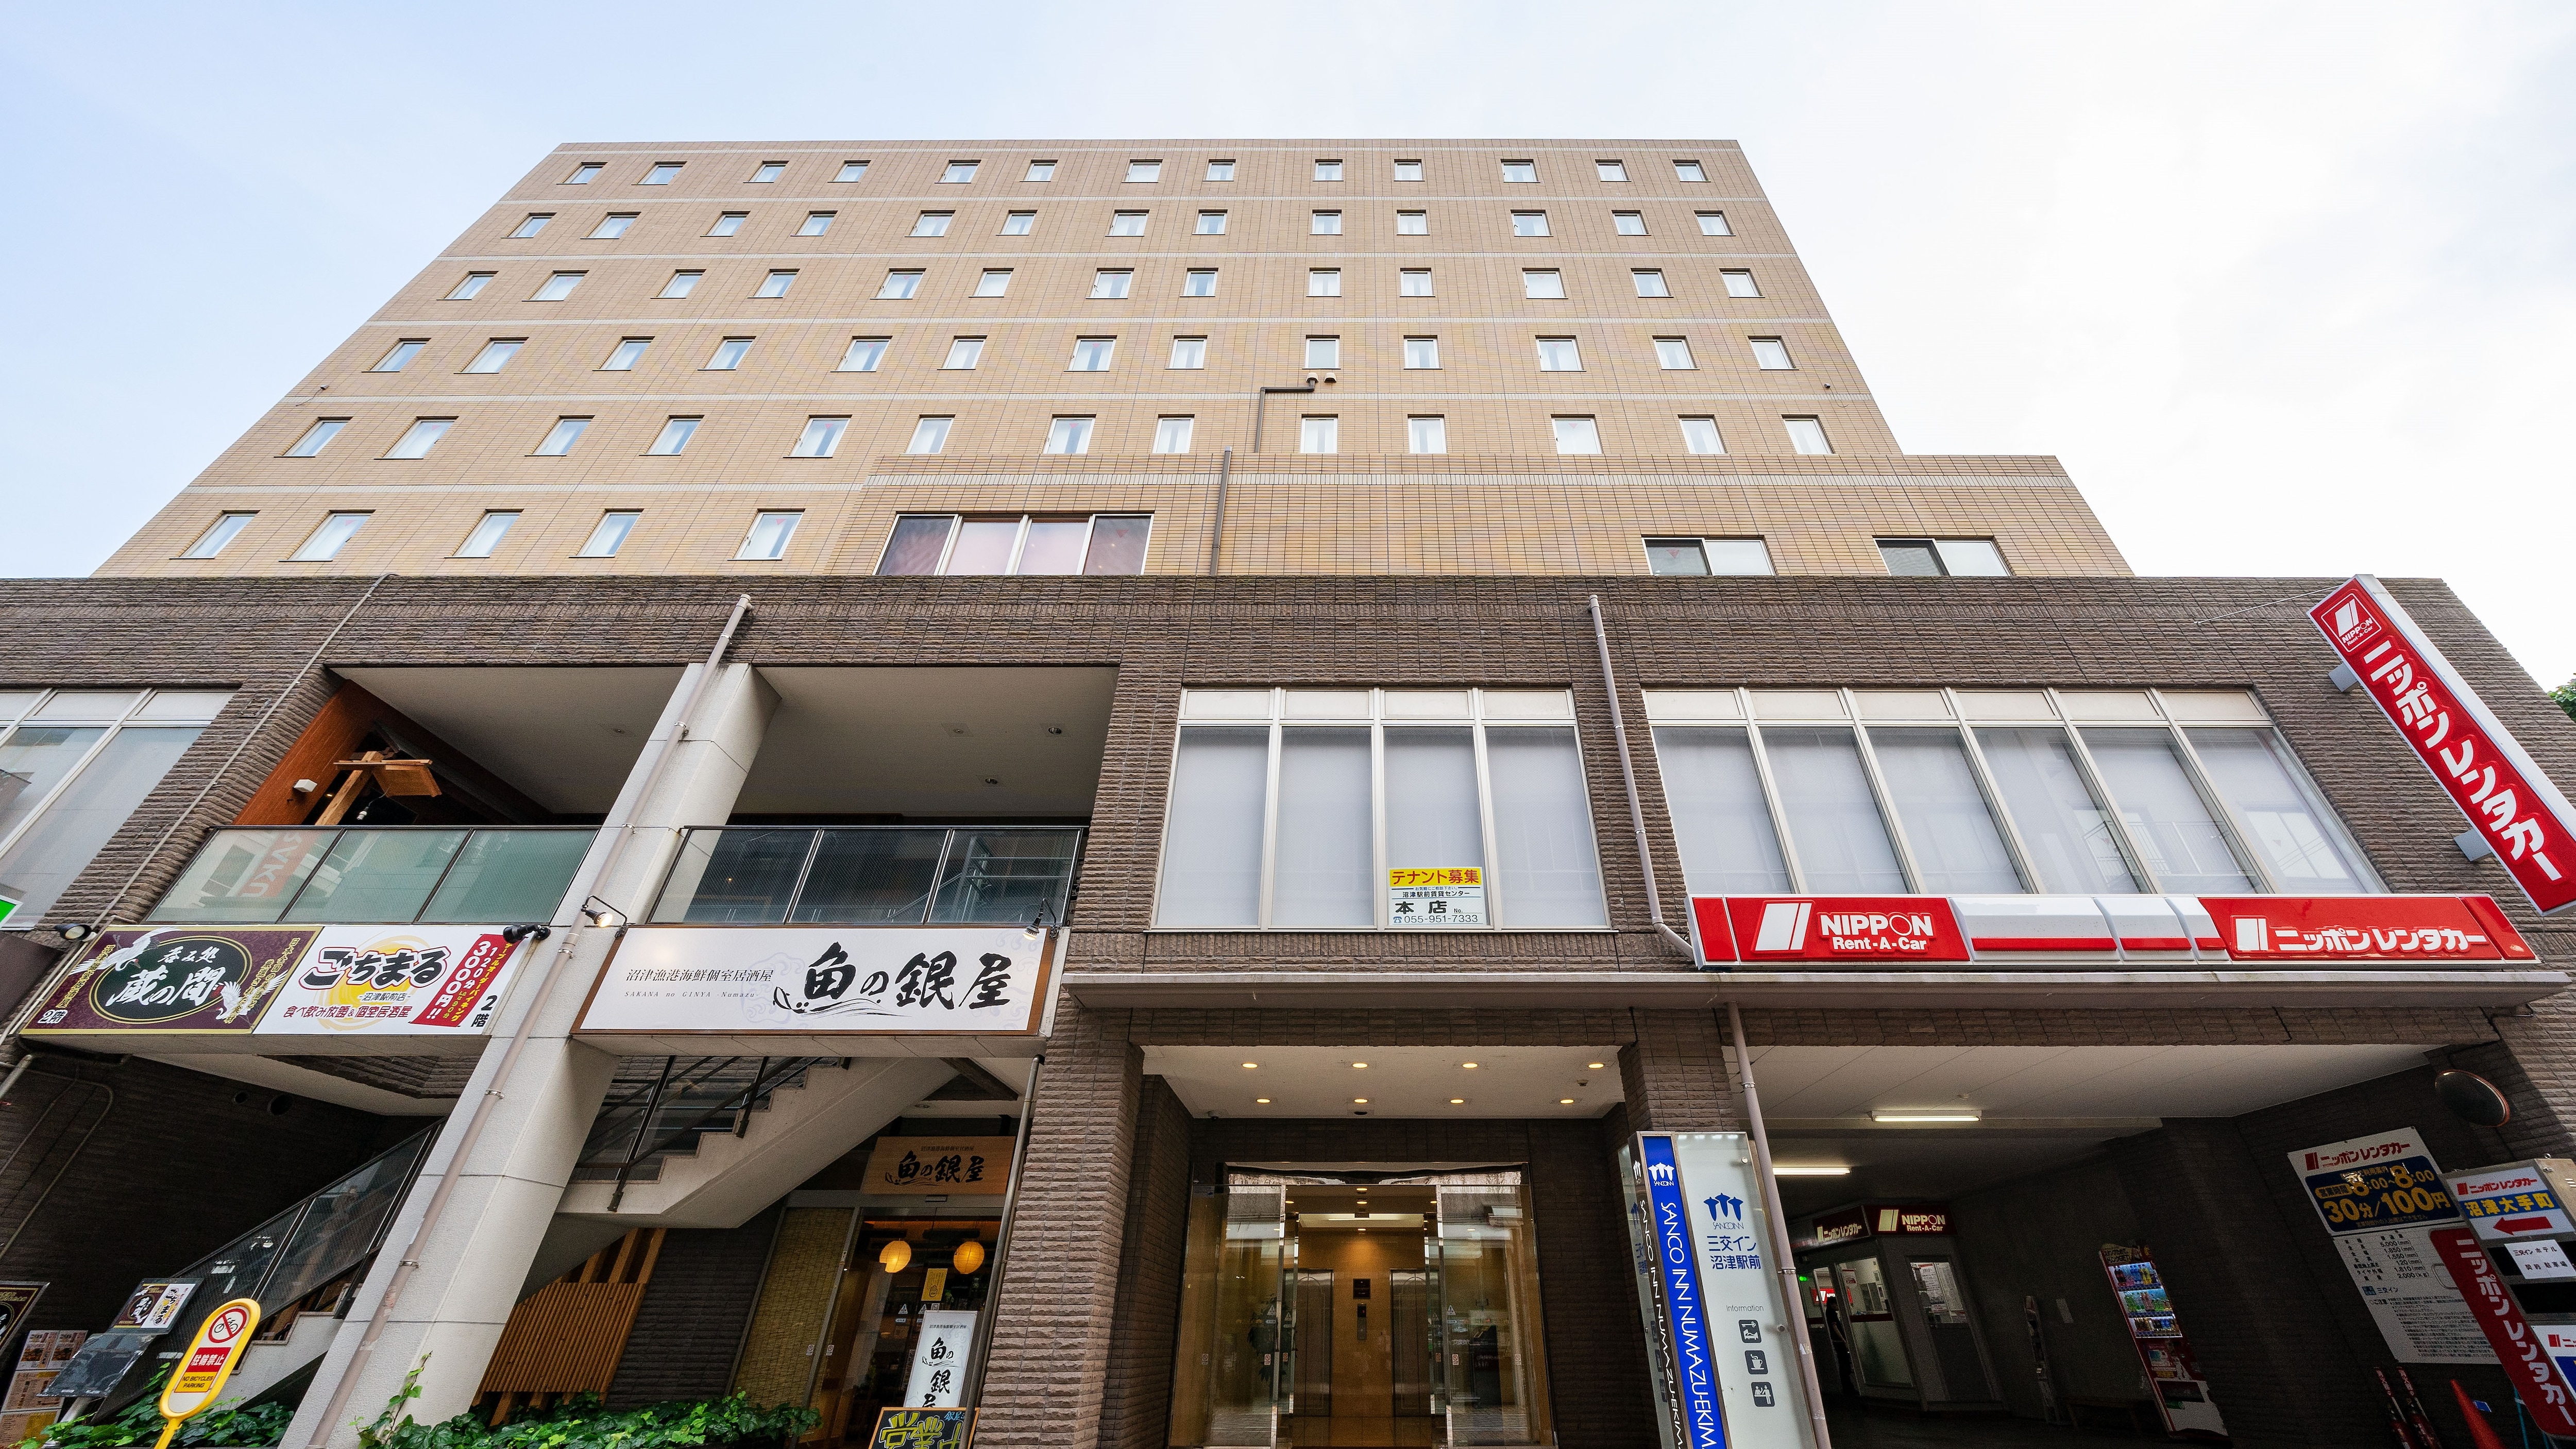 ภายนอกโรงแรม (จากด้านหน้า): เดิน 2 นาทีจากทางออกทิศใต้ของสถานี Numazu!